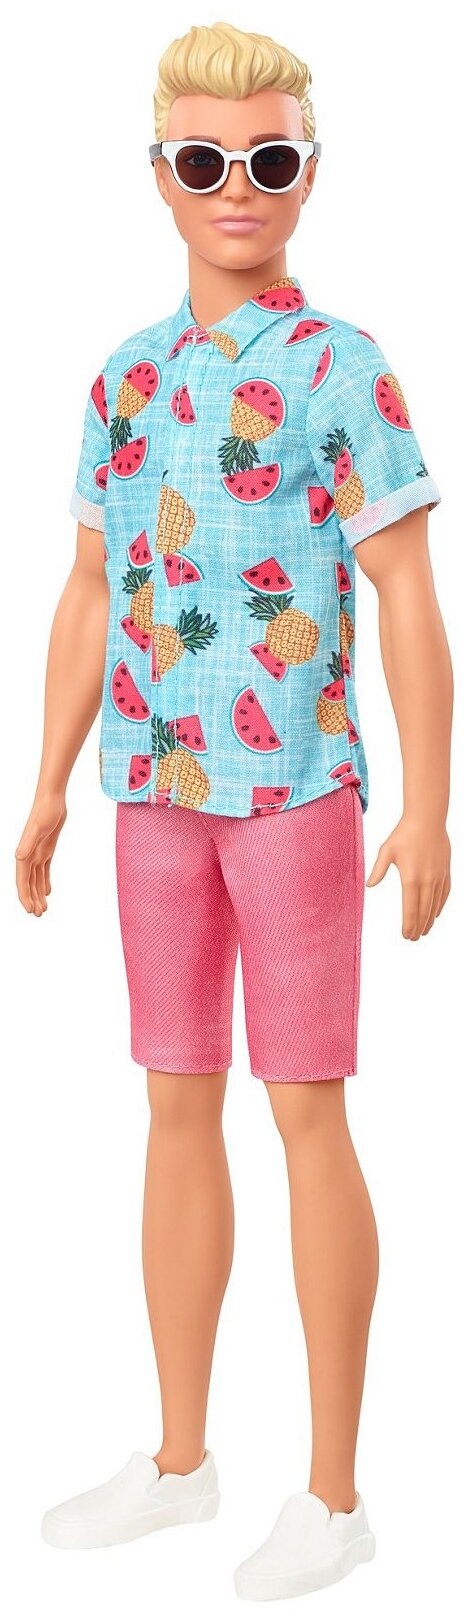 Кукла Barbie Игра с модой Кен DWK44 блондин в голубой рубашке с фруктами и розовых шортах